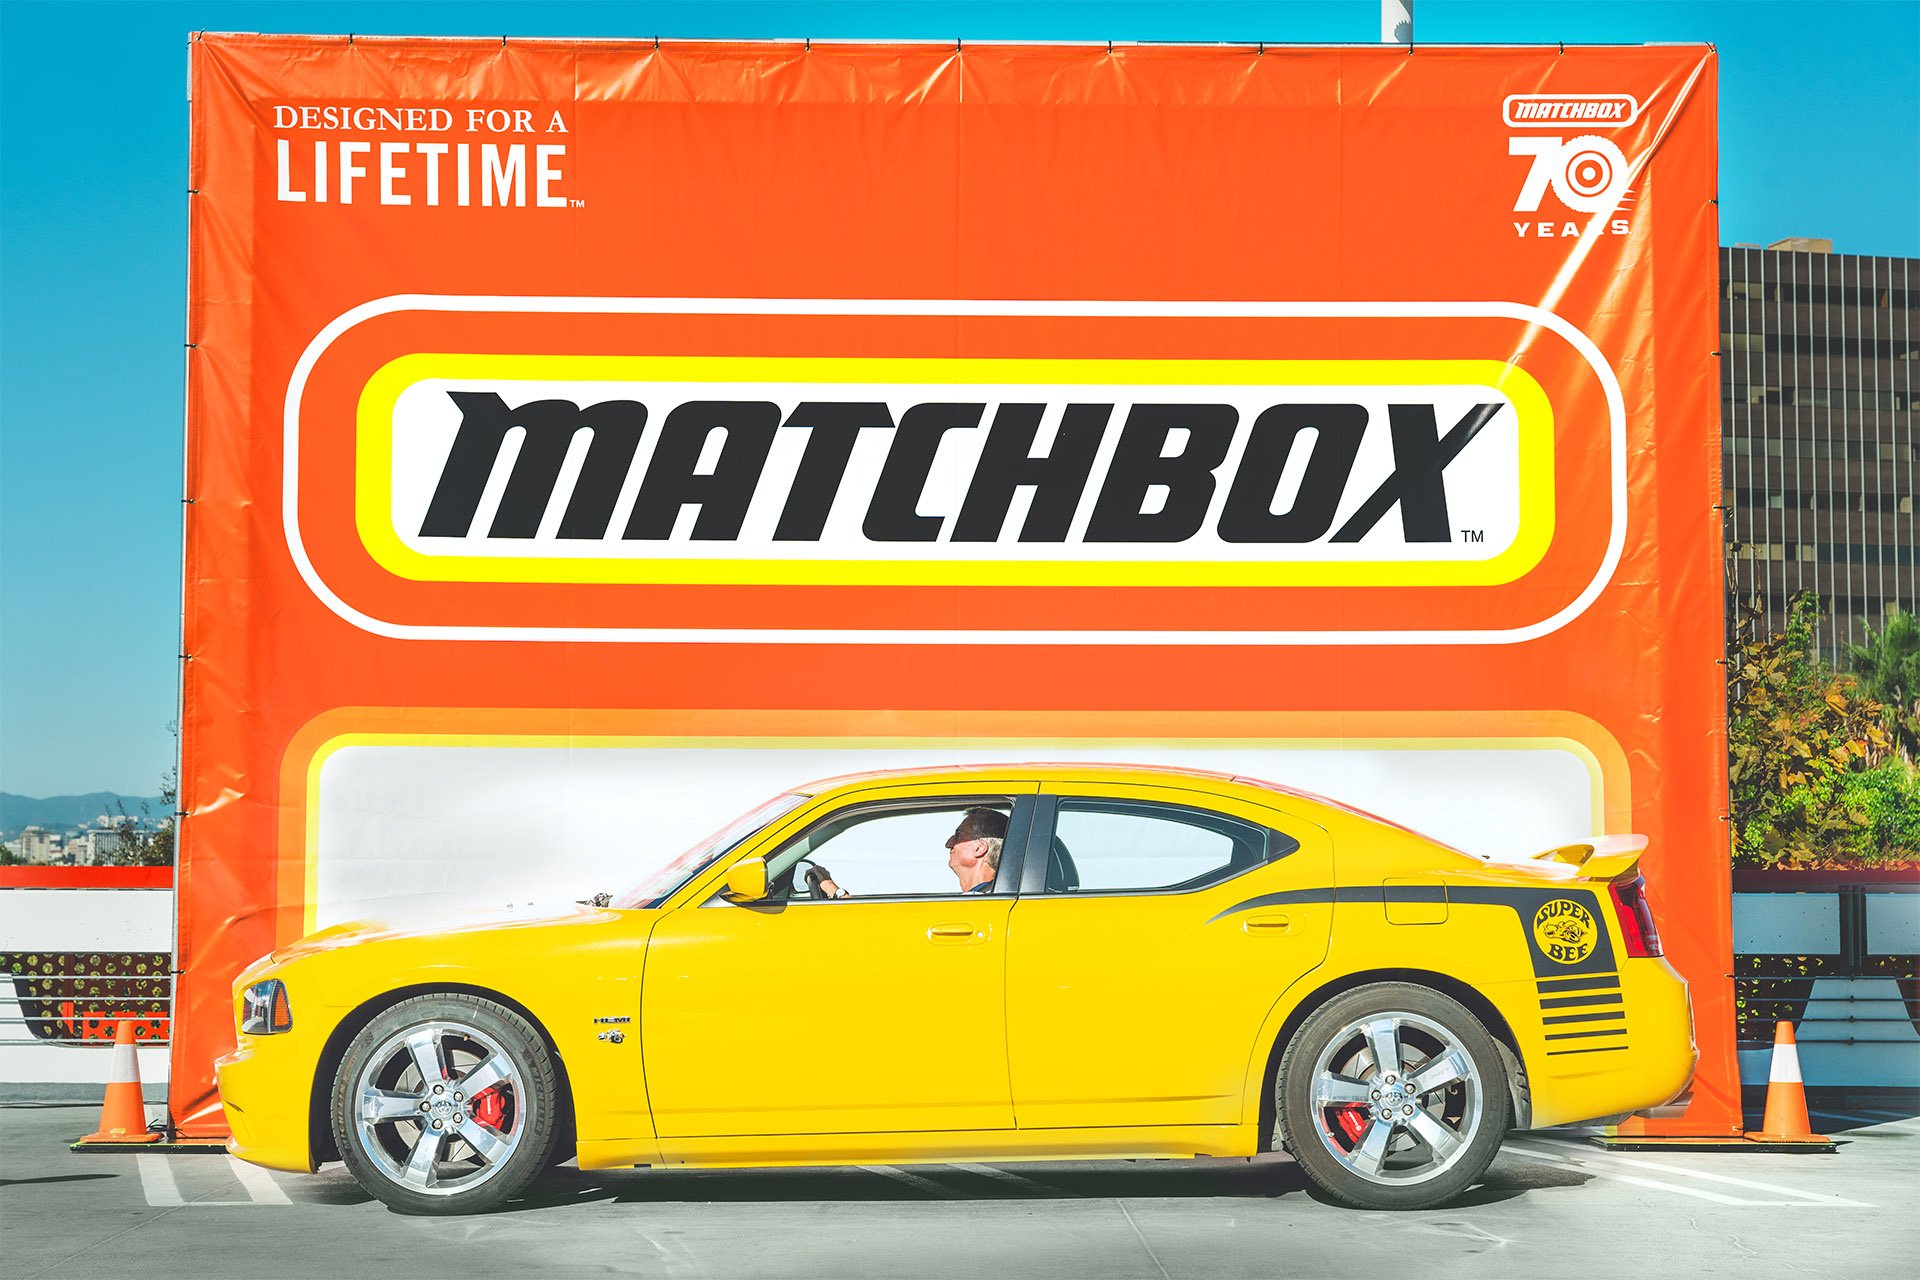 Petersen-Matchbox-Cruise-In-85.jpg